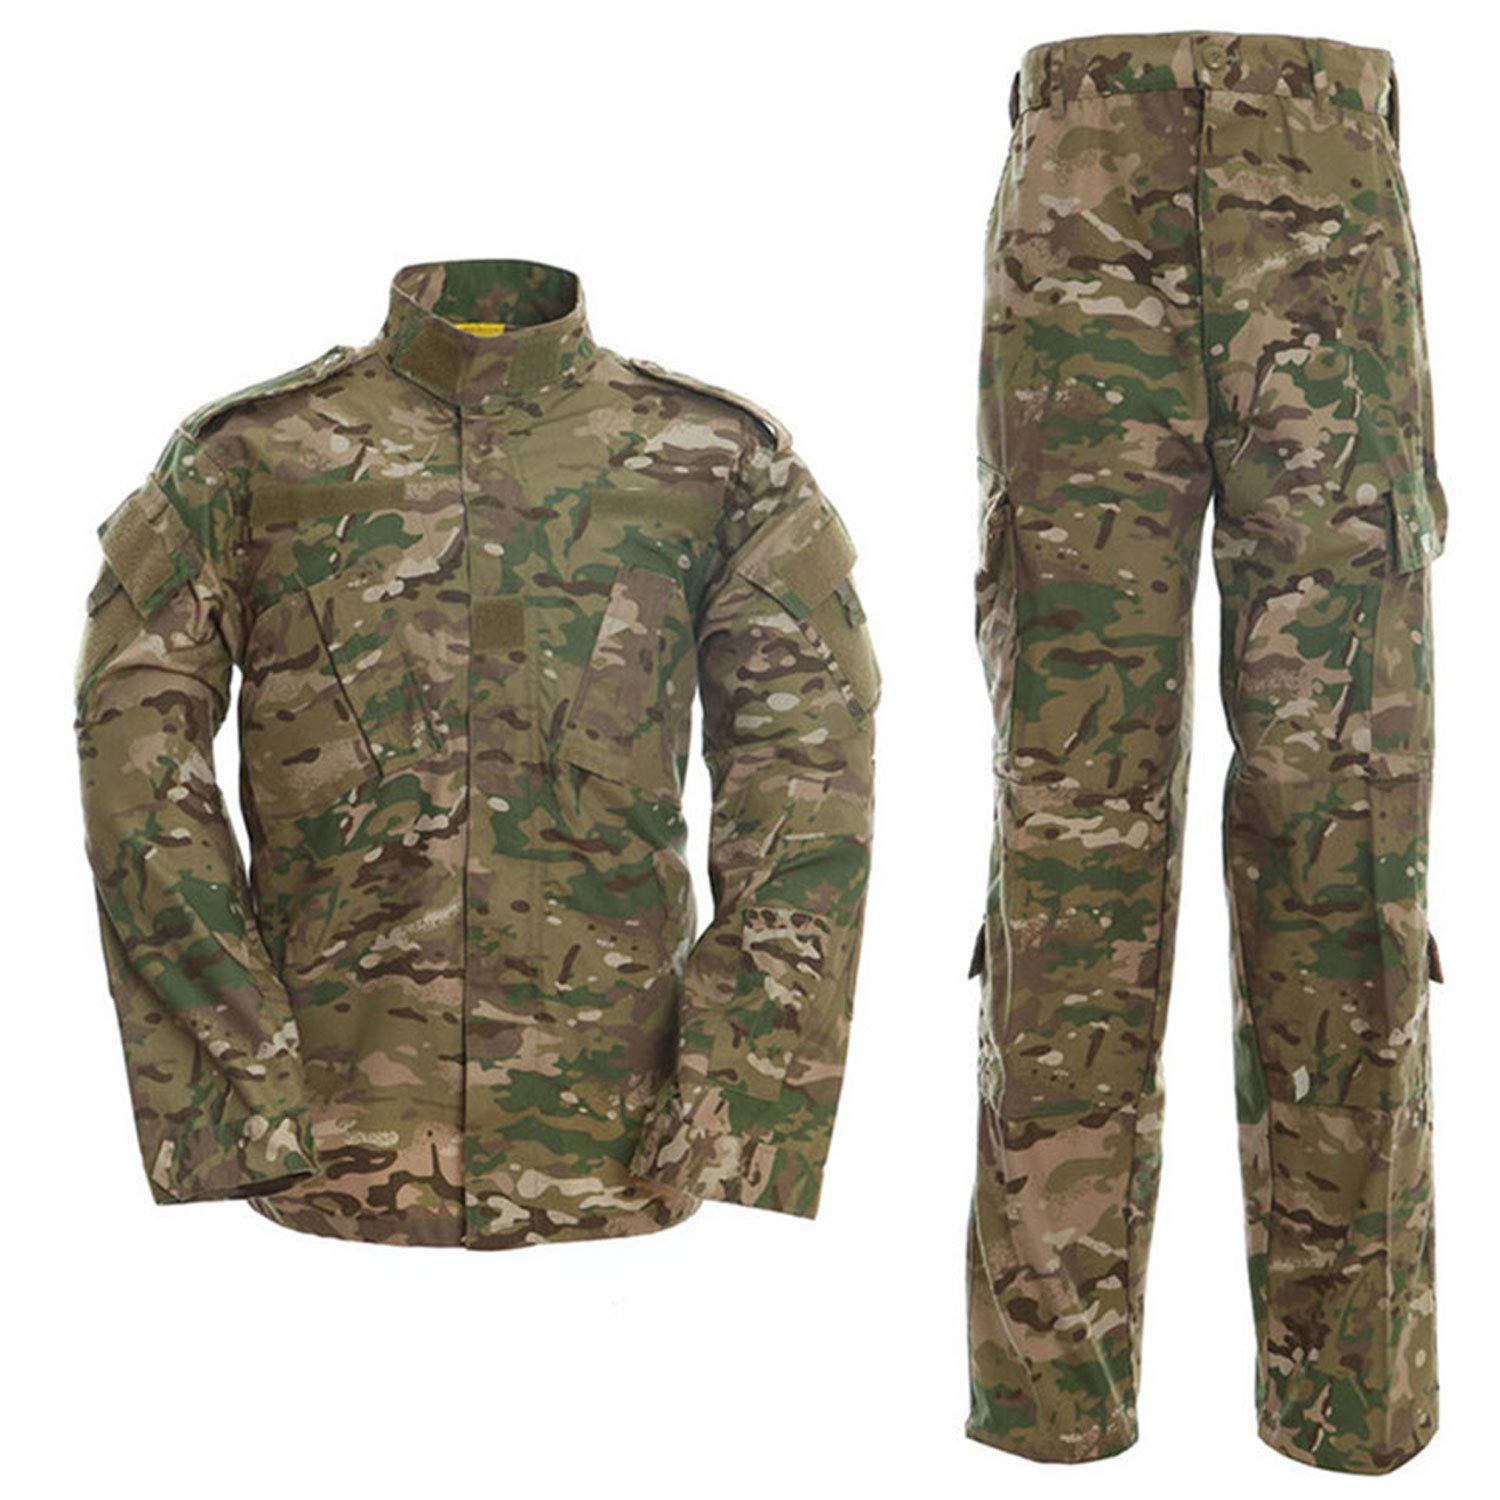 Camo Multicam Men's Tactical Jacket and Pants CP Cloth Uniform